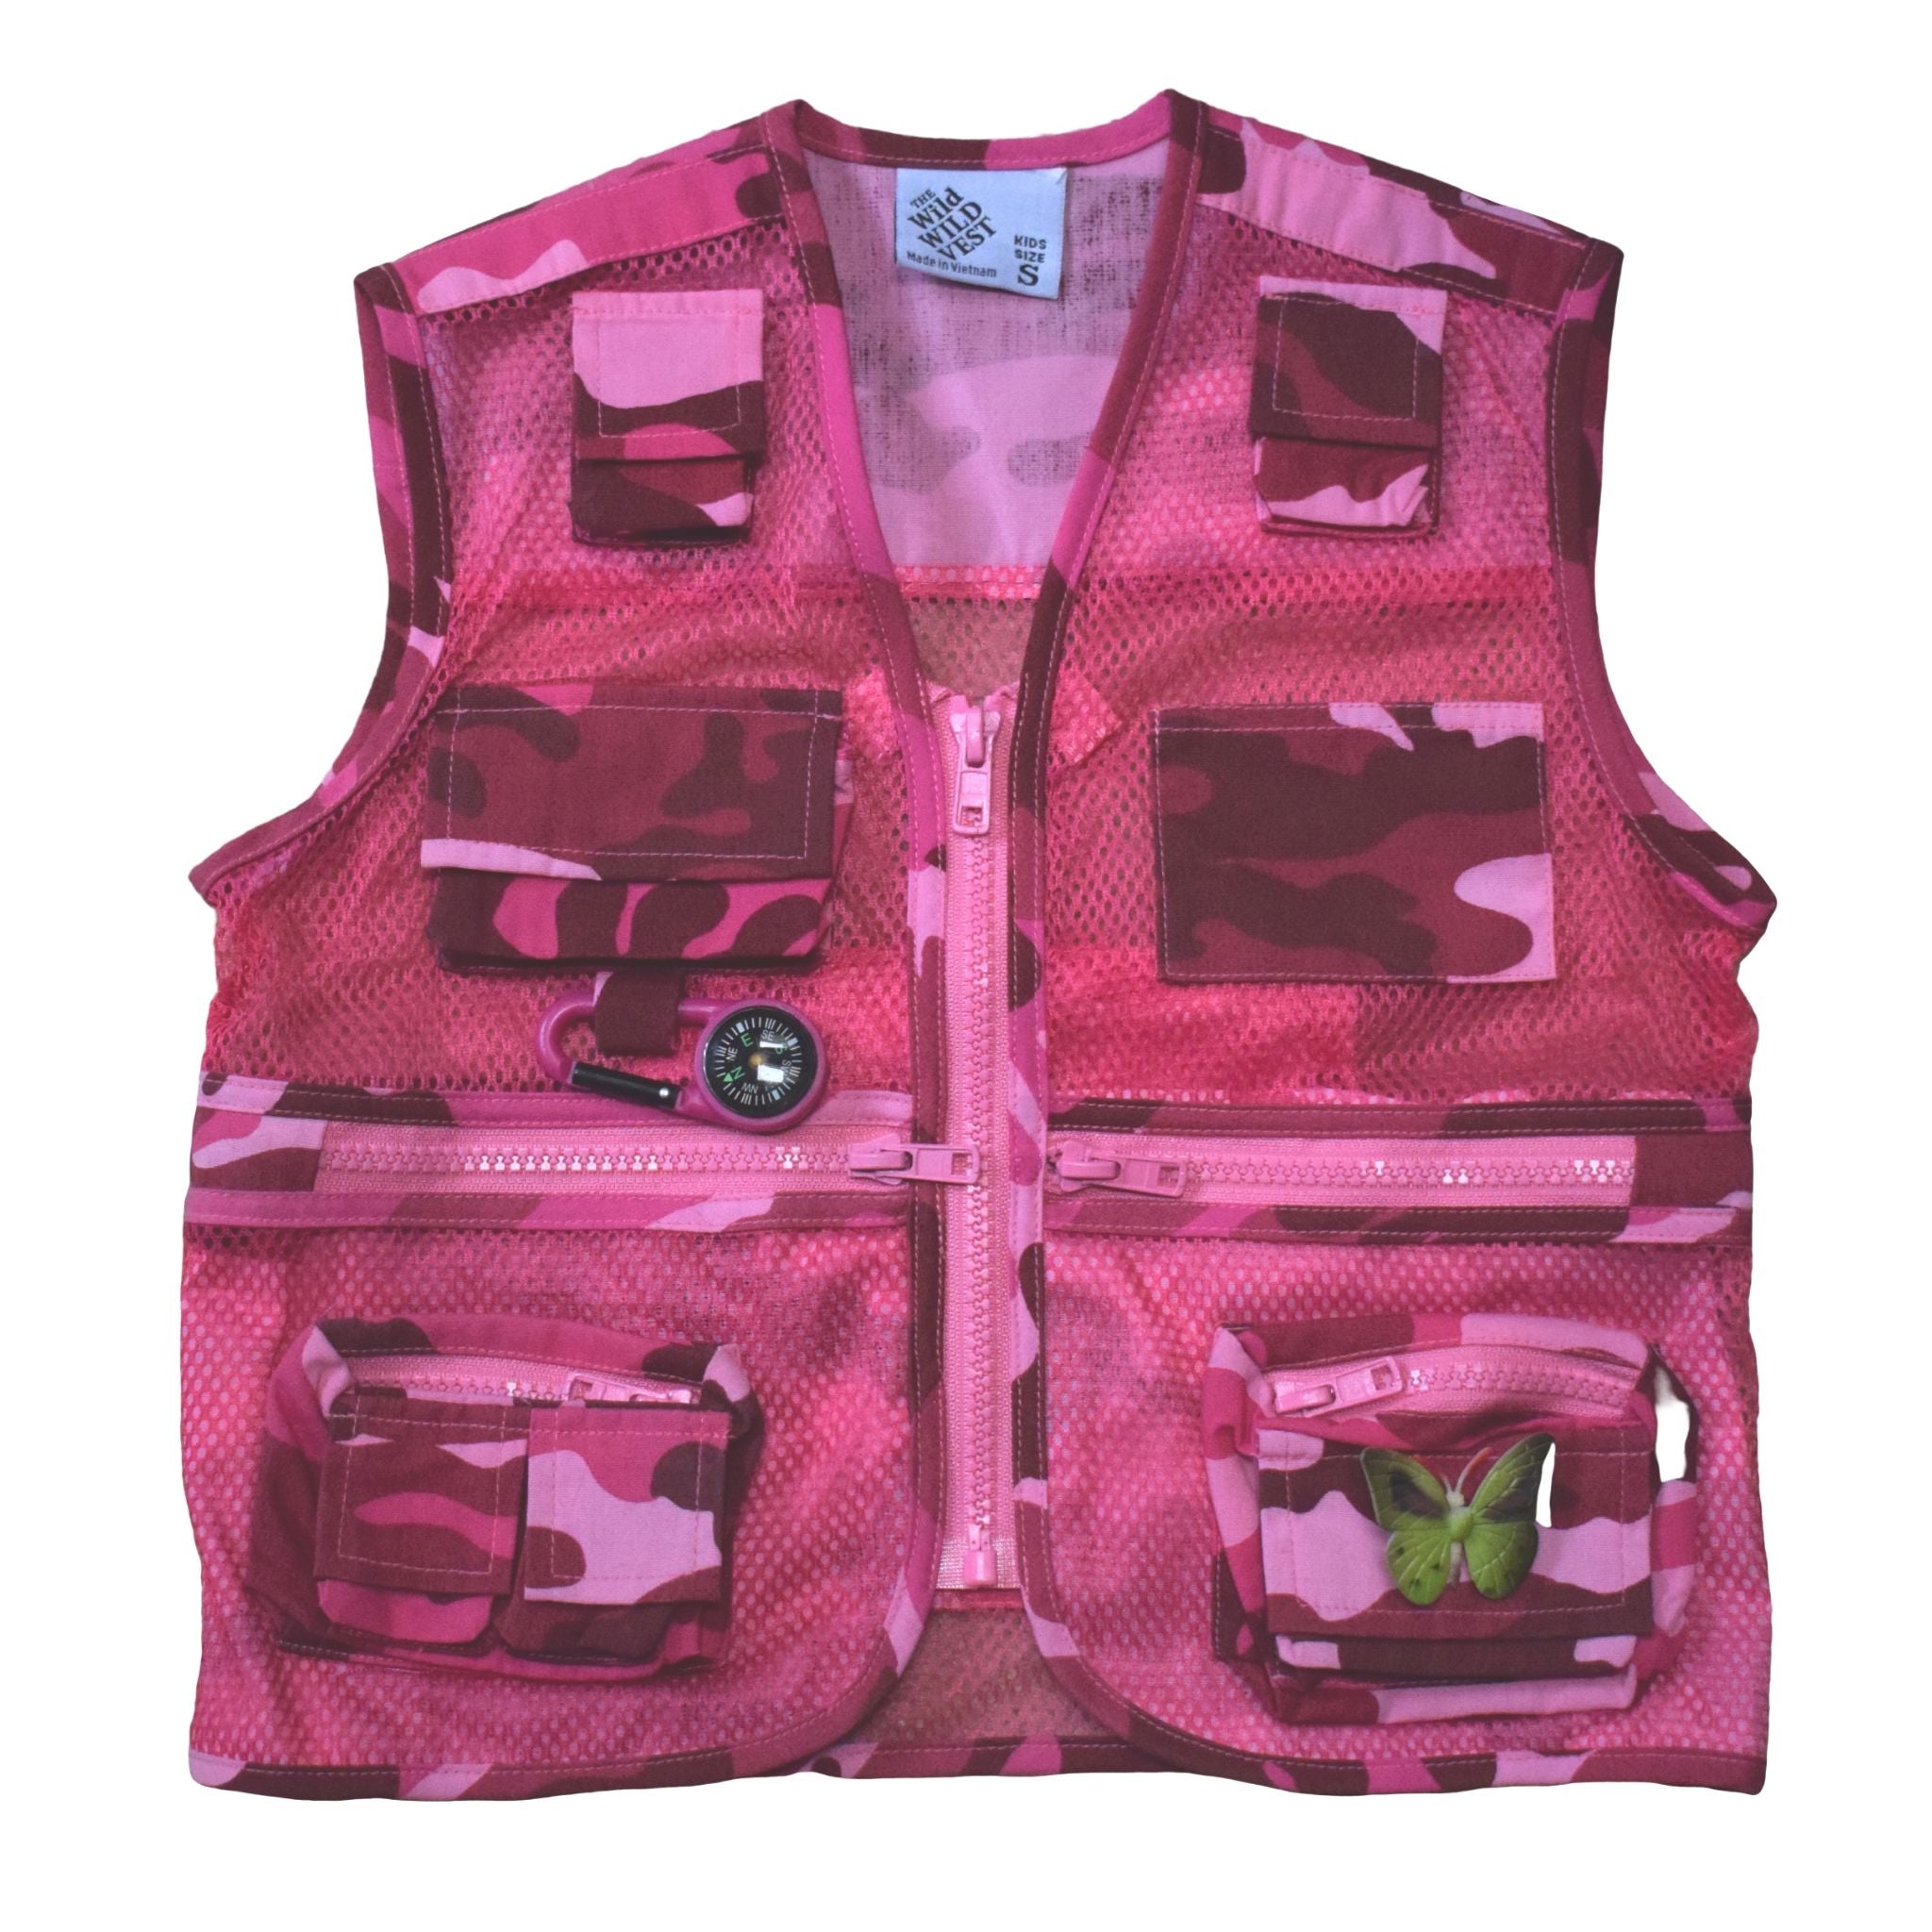 Jr Ranger Shop Adventure Vest - Pink Camo XL (Adult S)